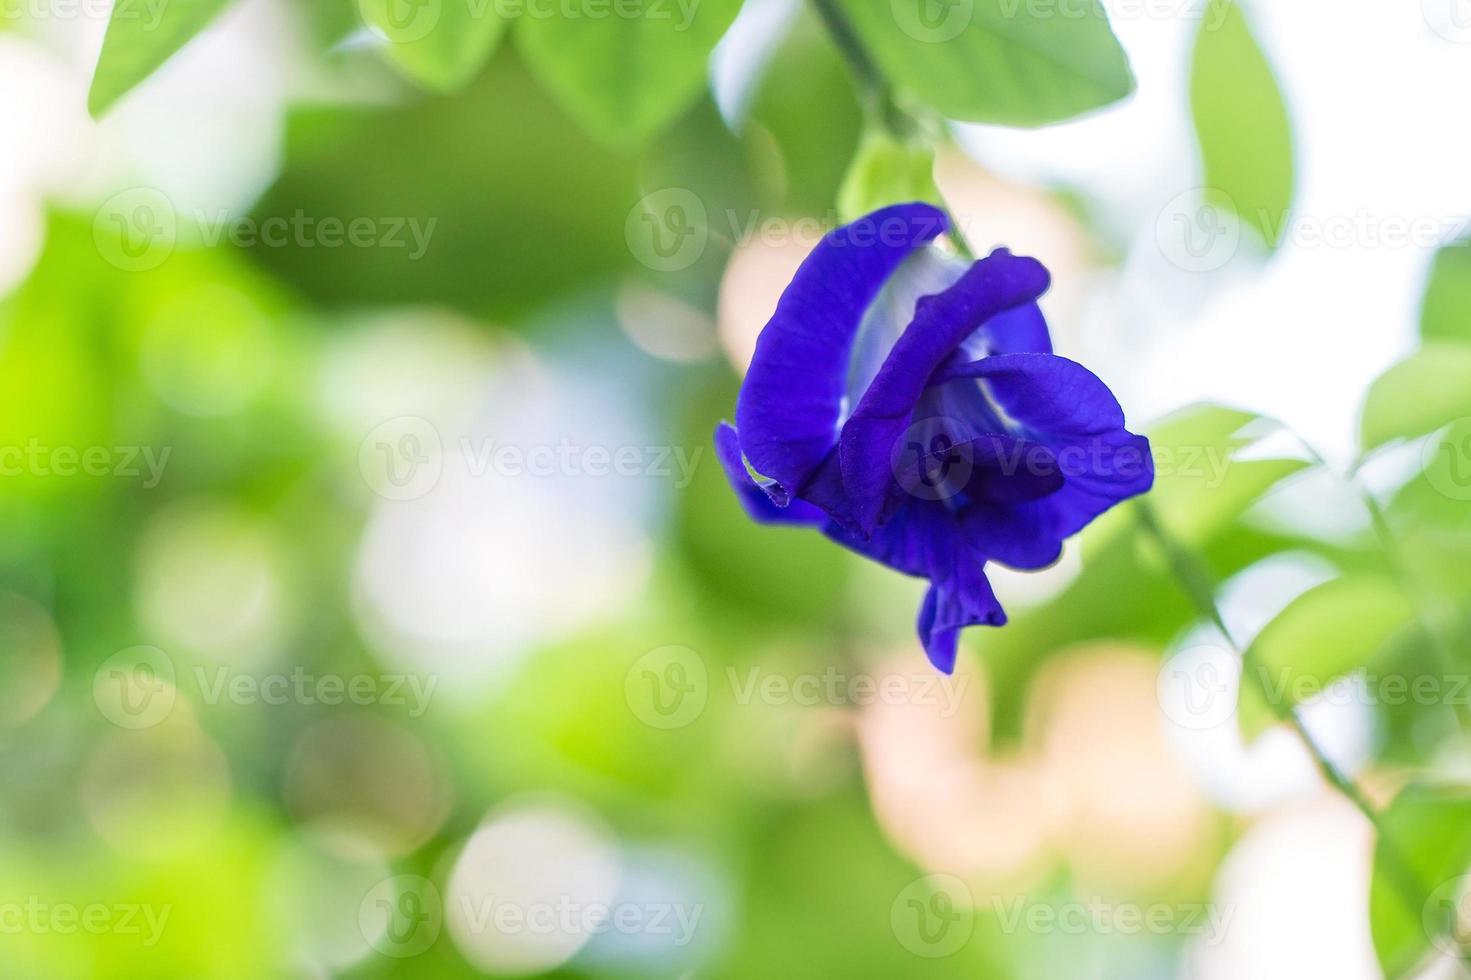 flores de ervilha borboleta são naturalmente belas flores azul-púrpura. pode ser usado como corante alimentar que contém antocianina. foto